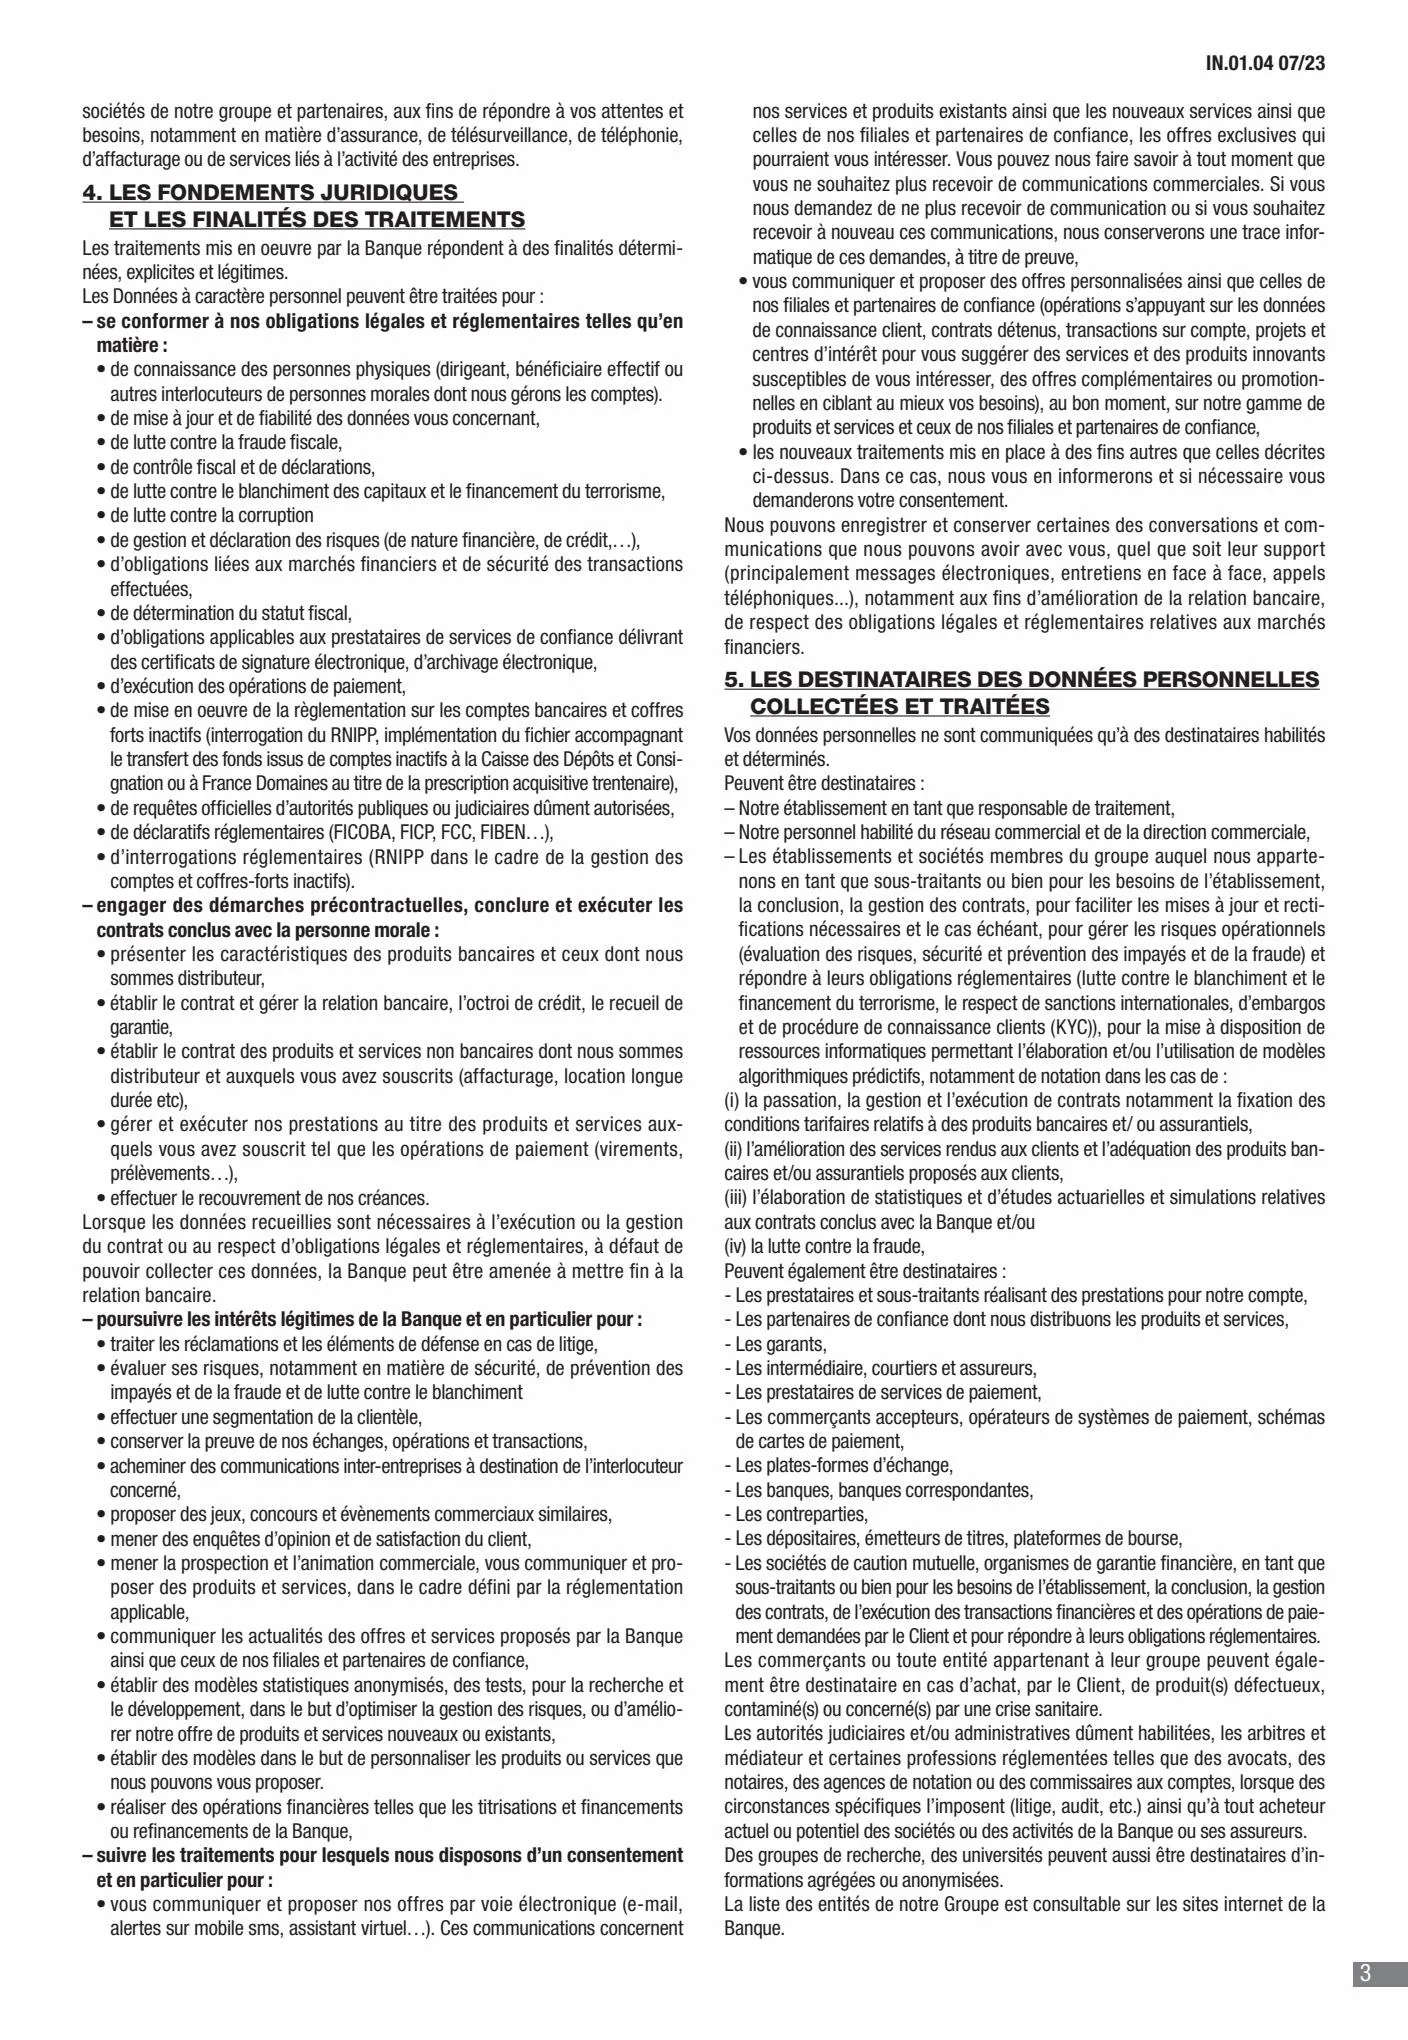 Catalogue CIC Conditions générales Professionels, page 00005